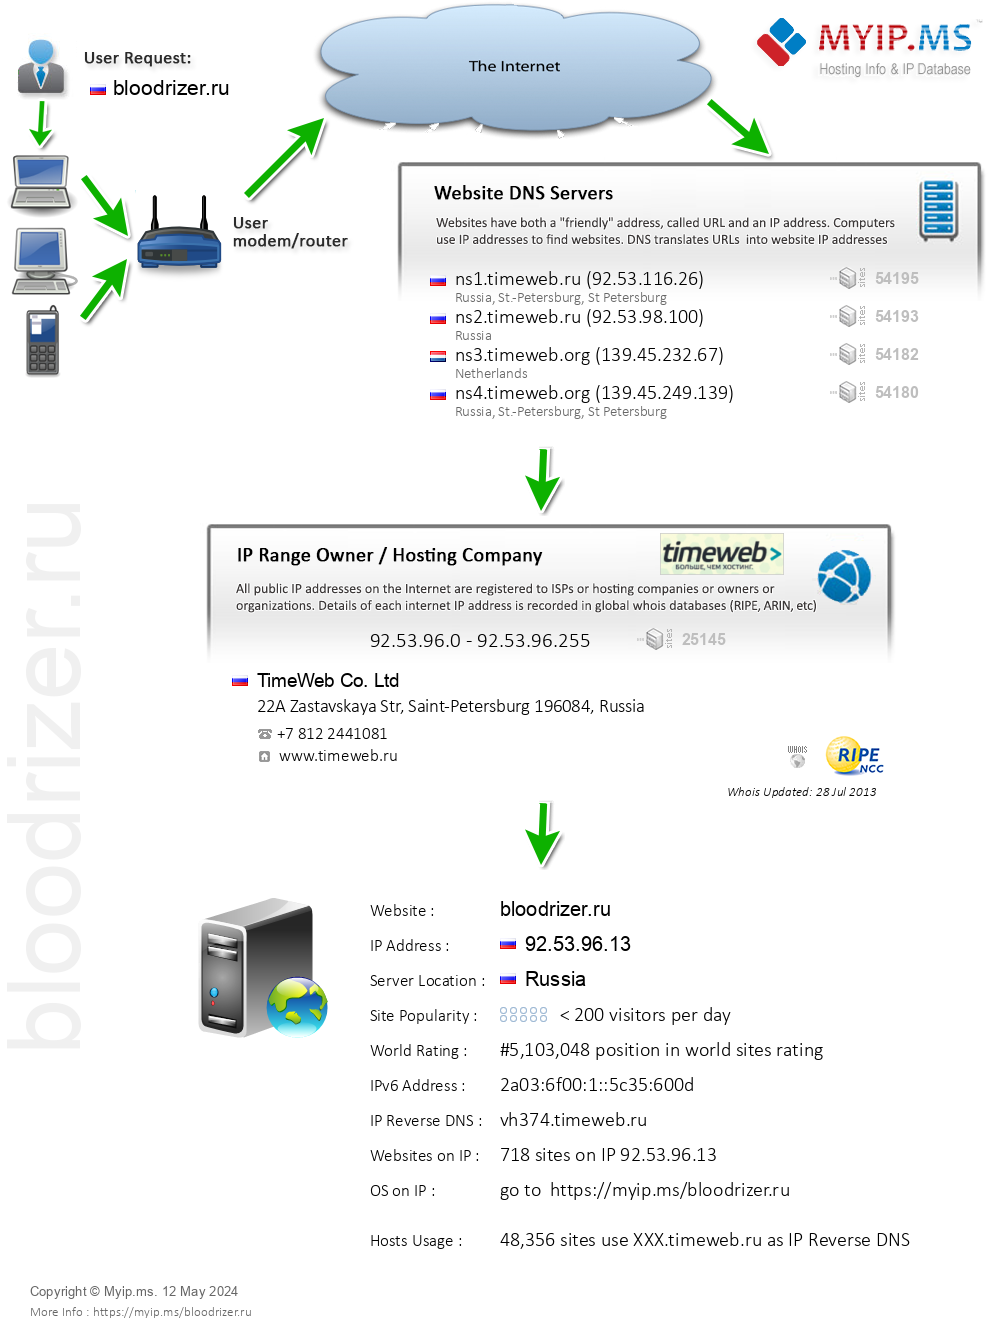 Bloodrizer.ru - Website Hosting Visual IP Diagram